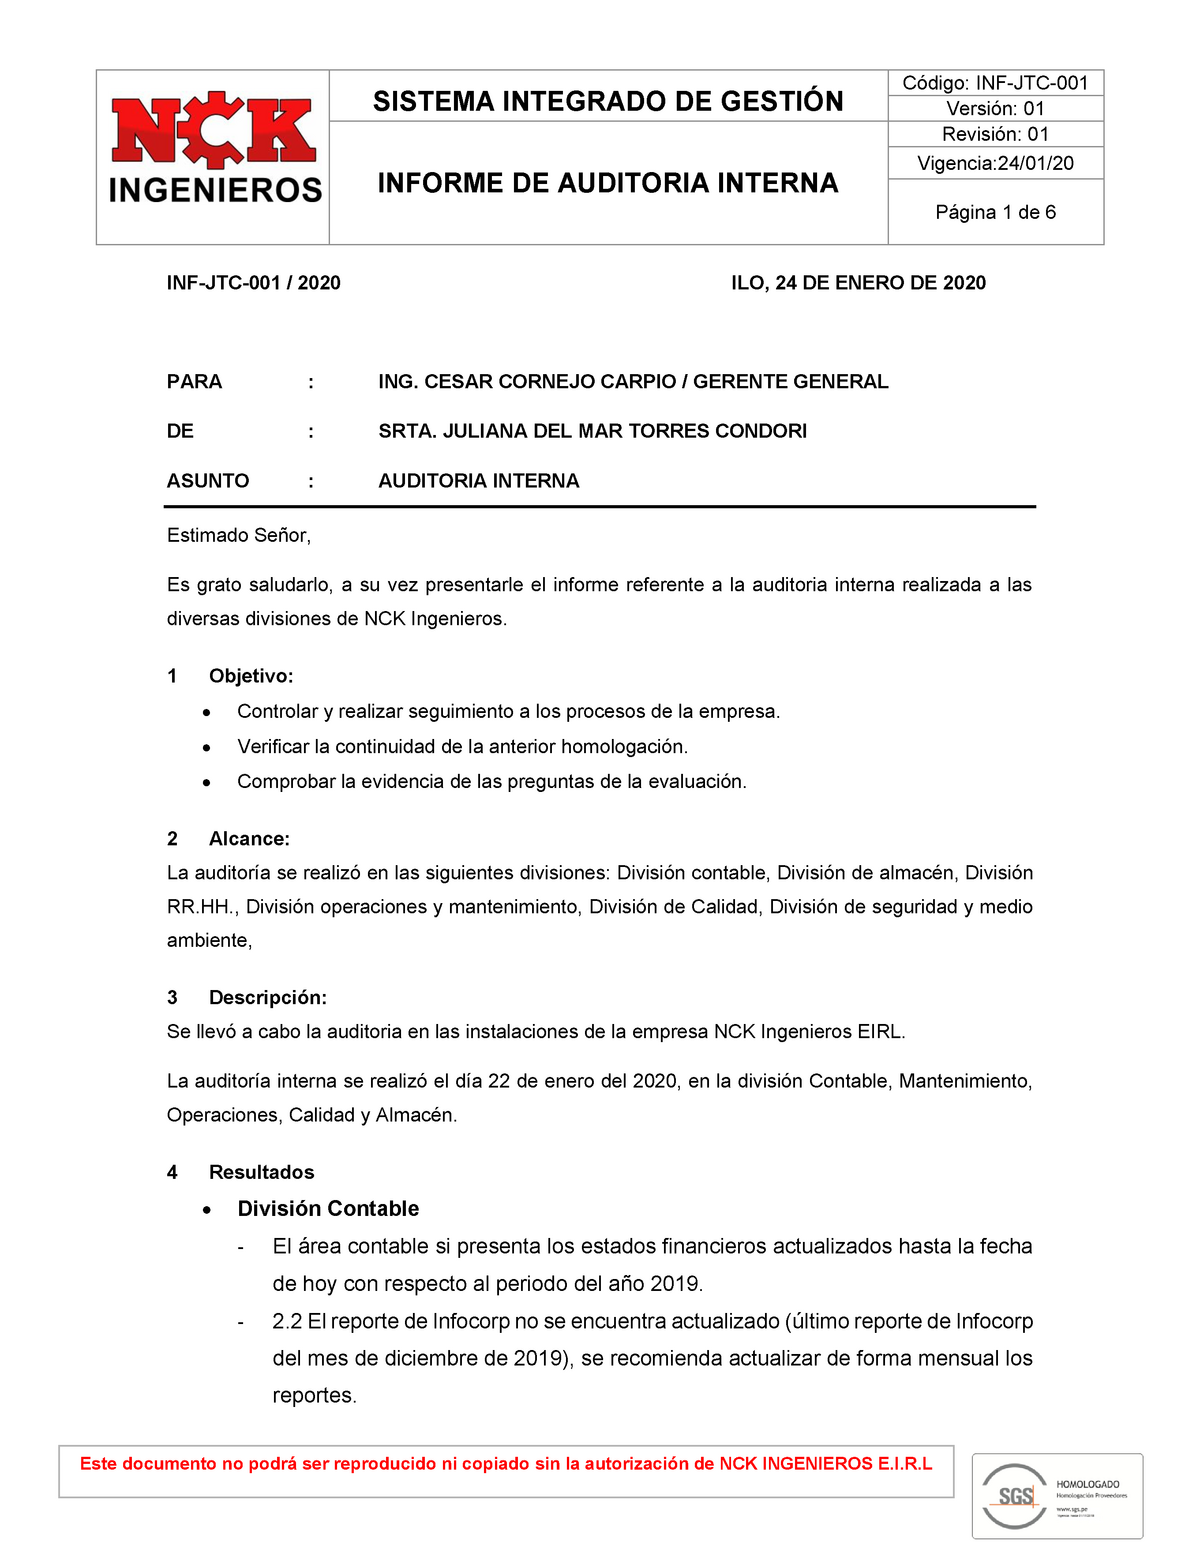 Informe De Auditoria Interna Sistema Integrado De GestiÓn Versión 01